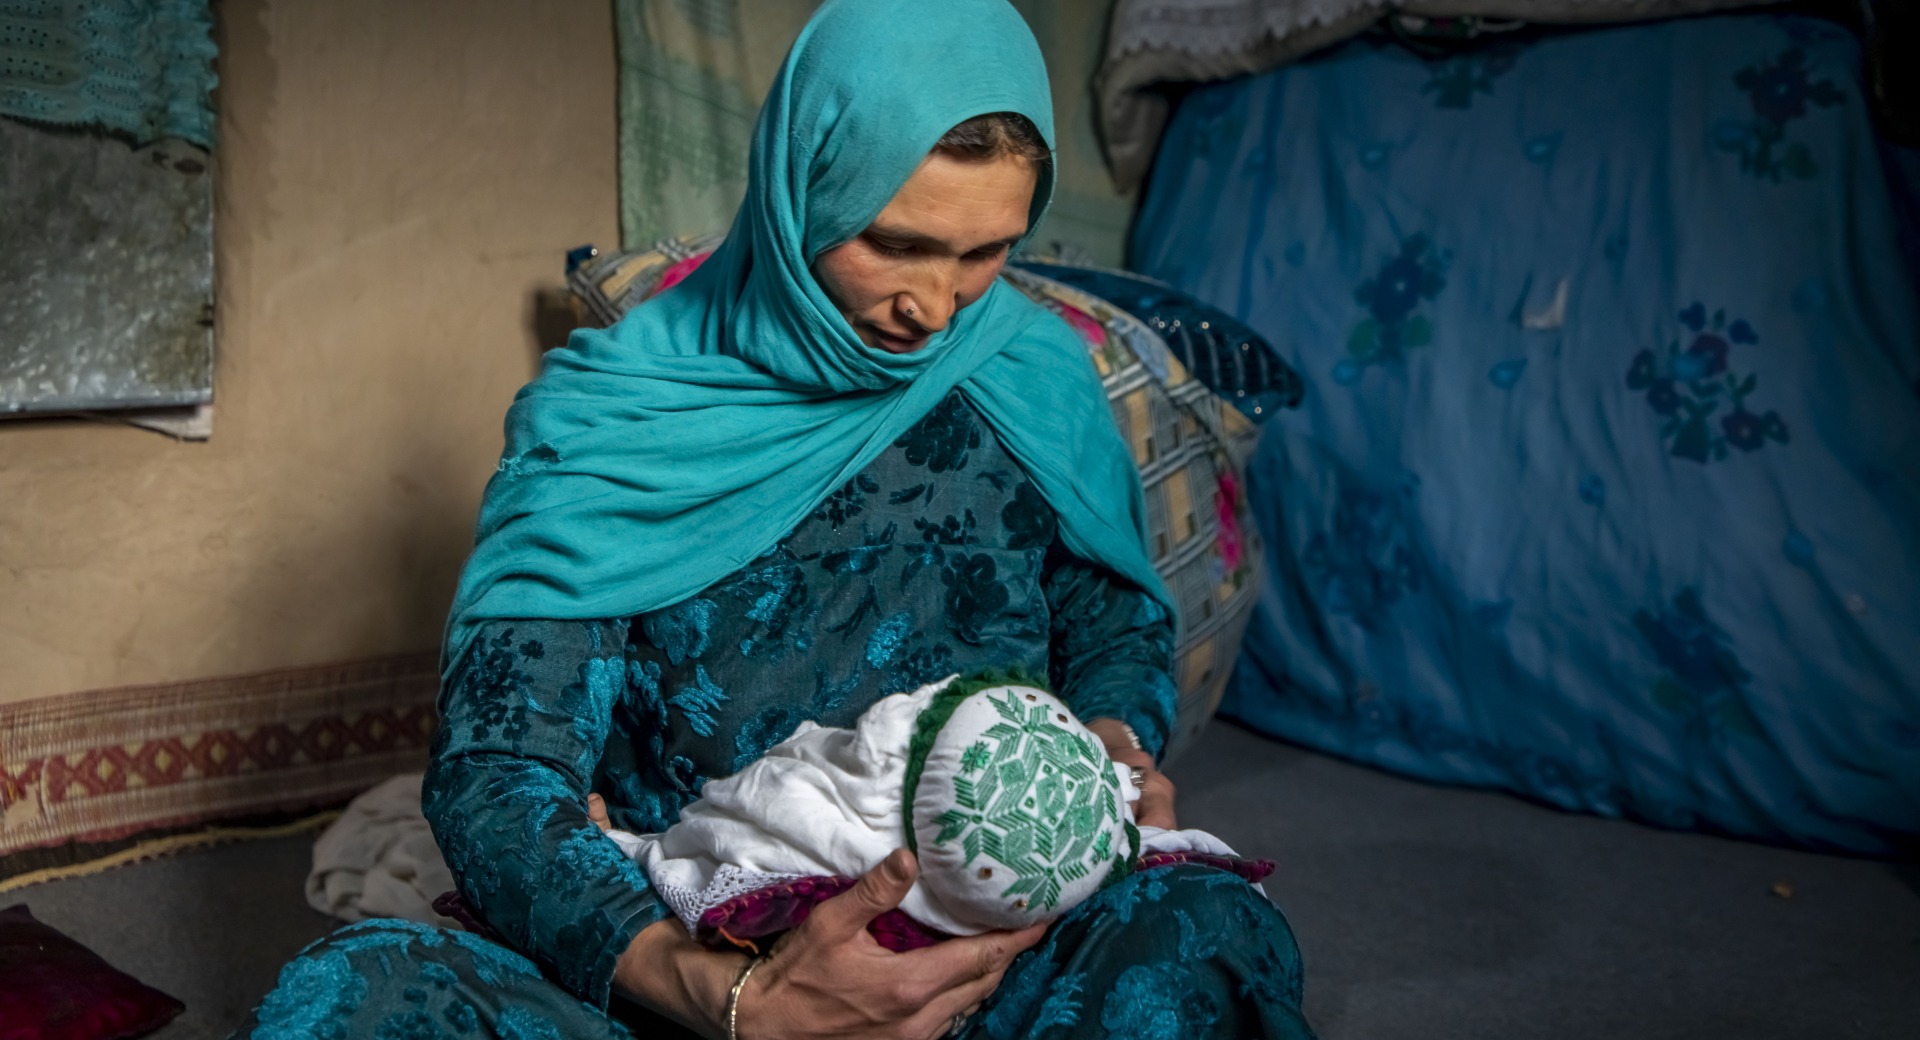 Надя кормит своего младшего двухмесячного ребенка дома в провинции Дуйконди, Афганистан. Action Against Hunger работает в этой области, чтобы управлять программами питания и оказывать мобильную поддержку в области здравоохранения и питания.